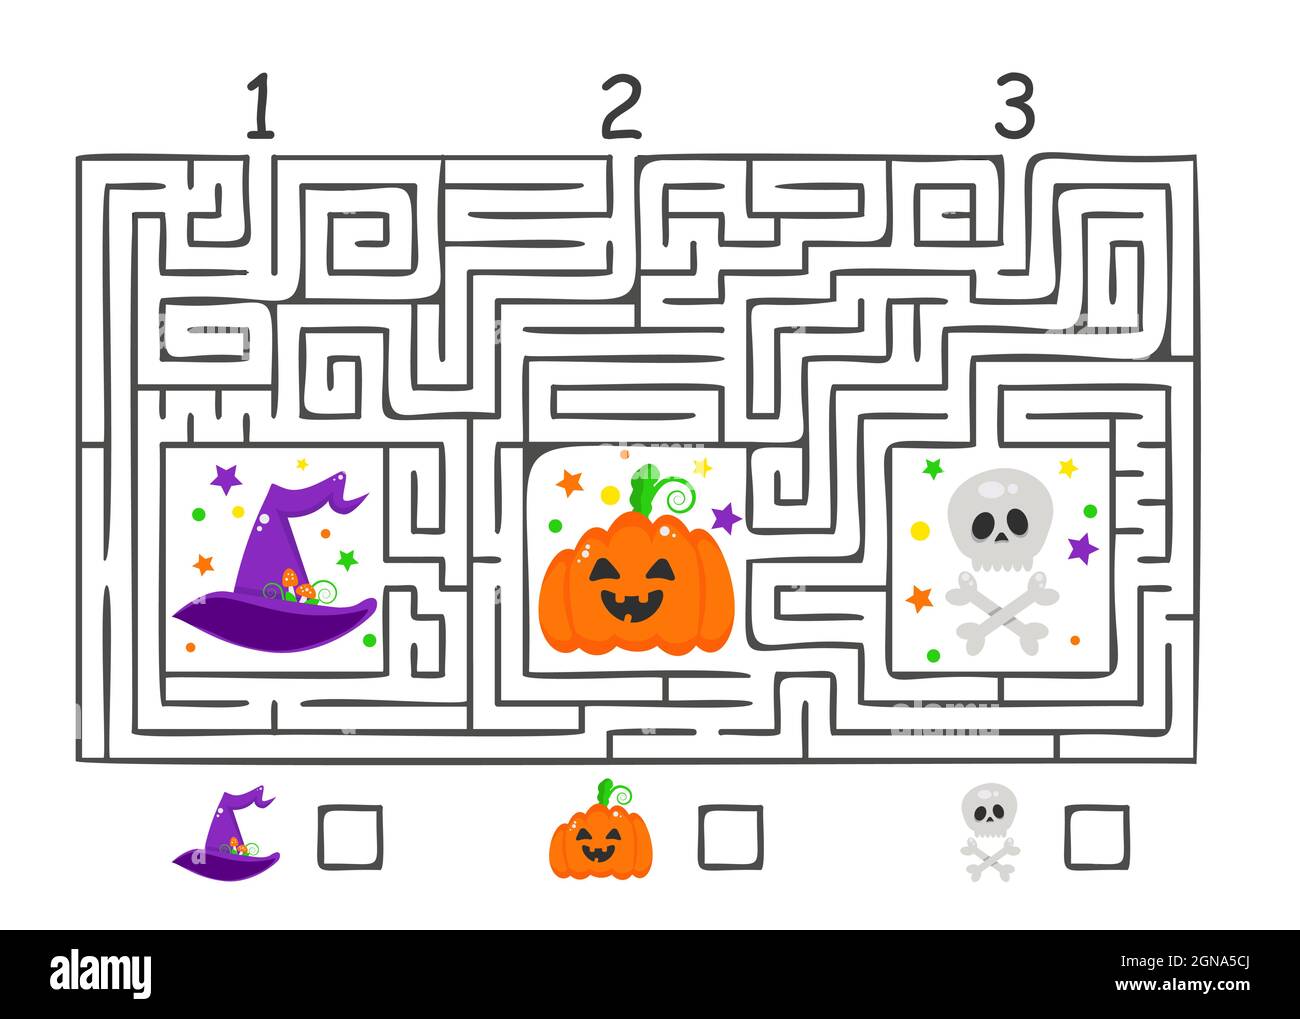 Labirinto rettangolare di Halloween labirinto gioco per bambini. Enigma logico a labirinto. Tre ingressi. Illustrazione piatta vettoriale Illustrazione Vettoriale